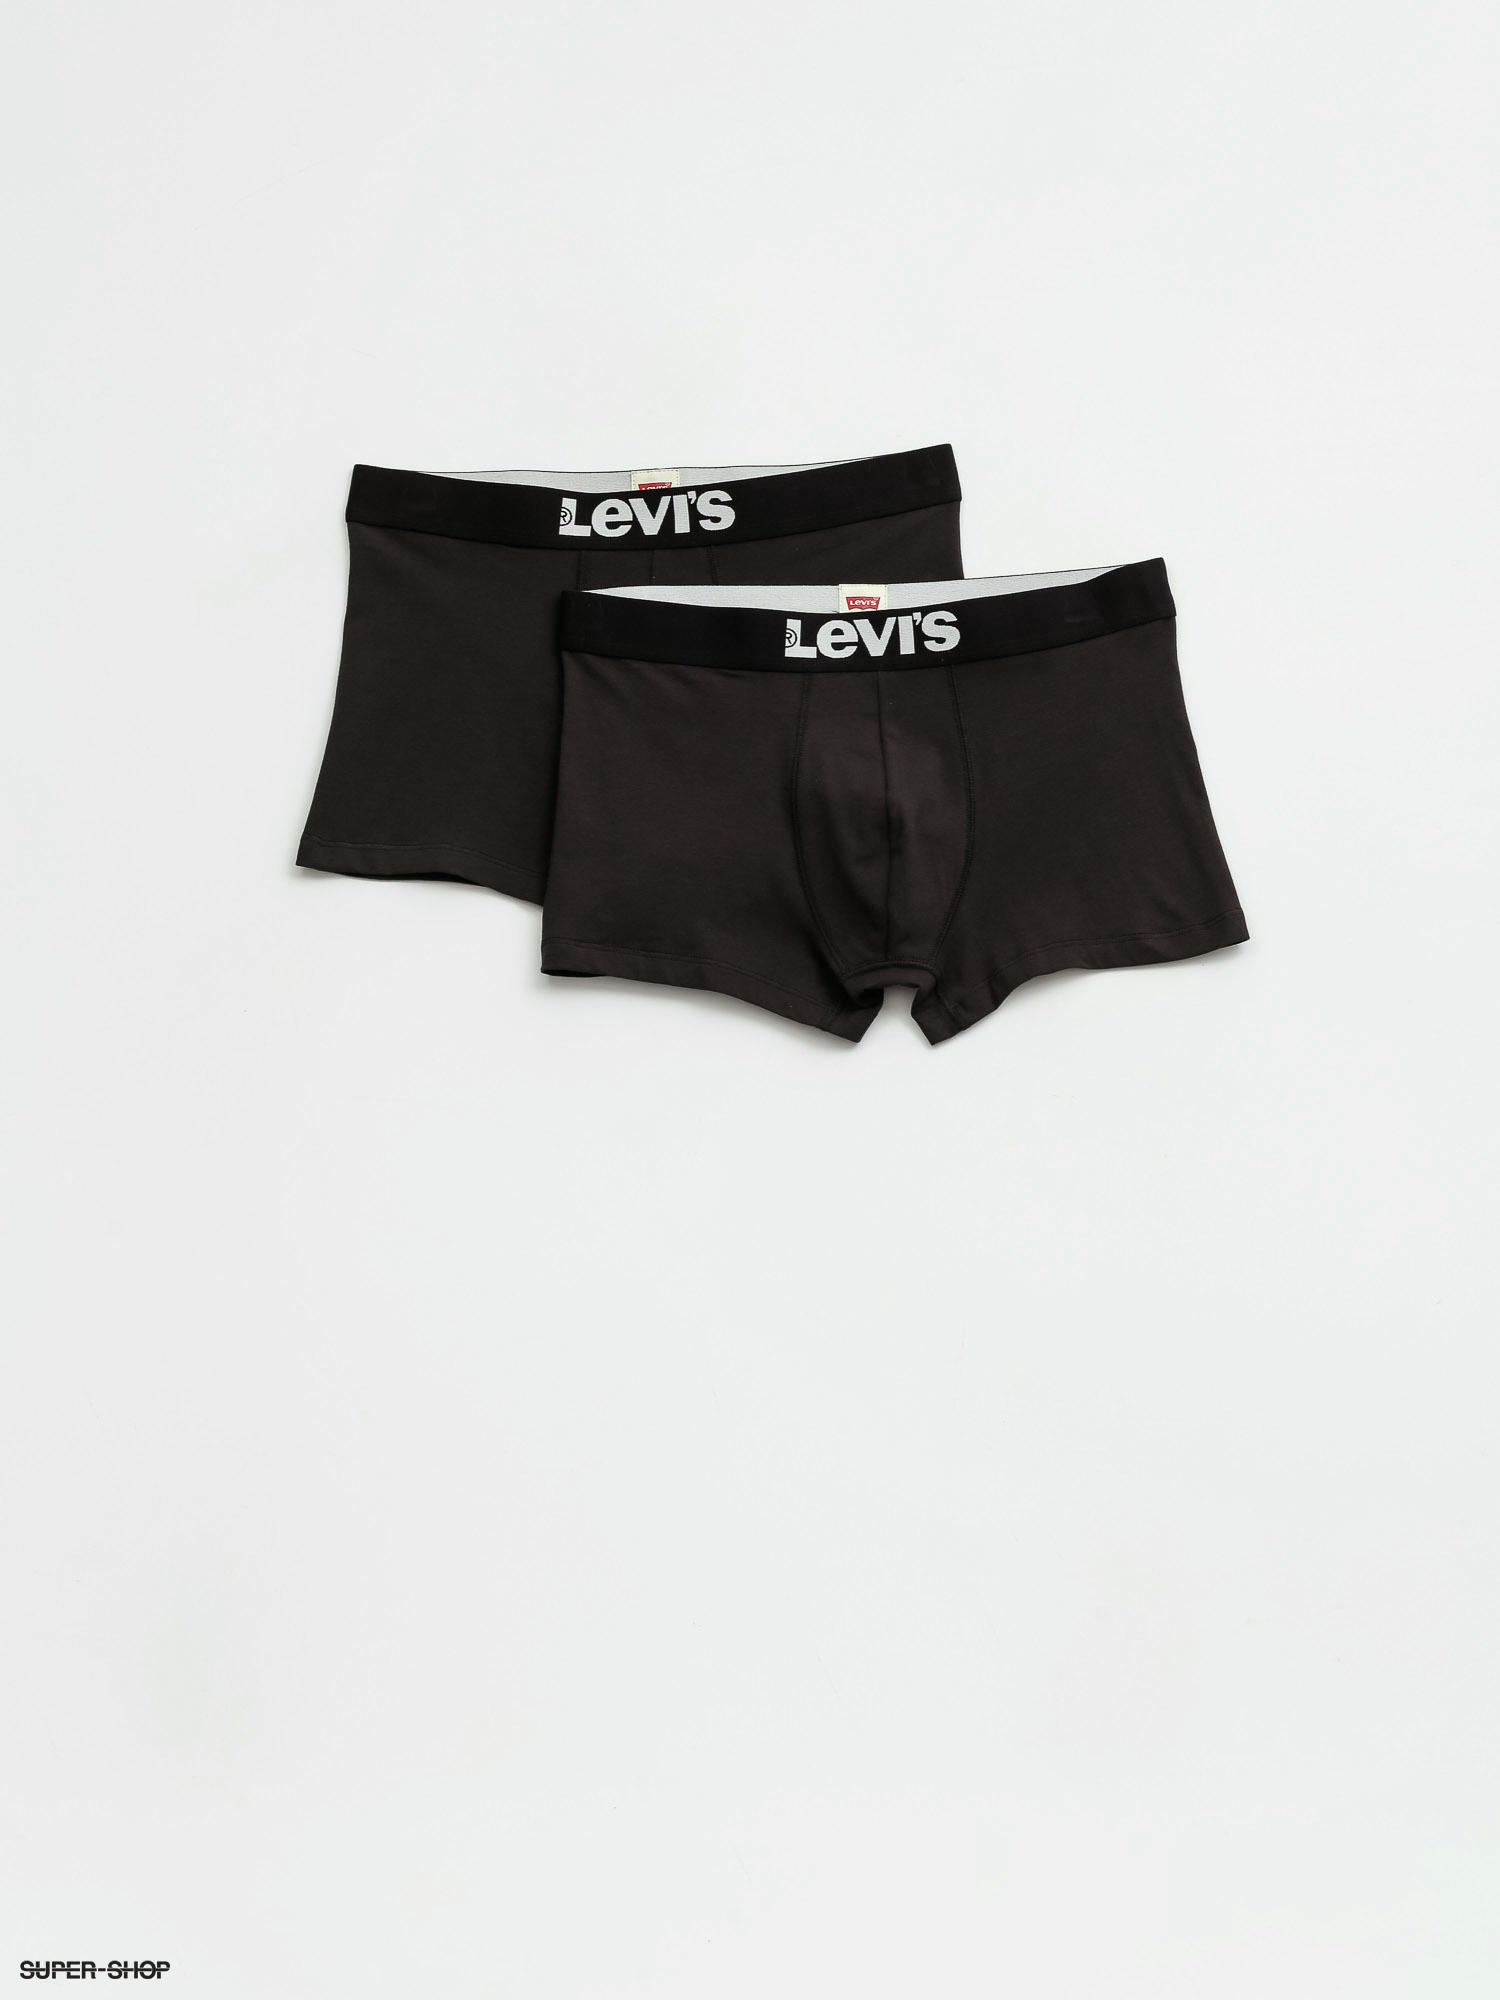 levi's trunk underwear